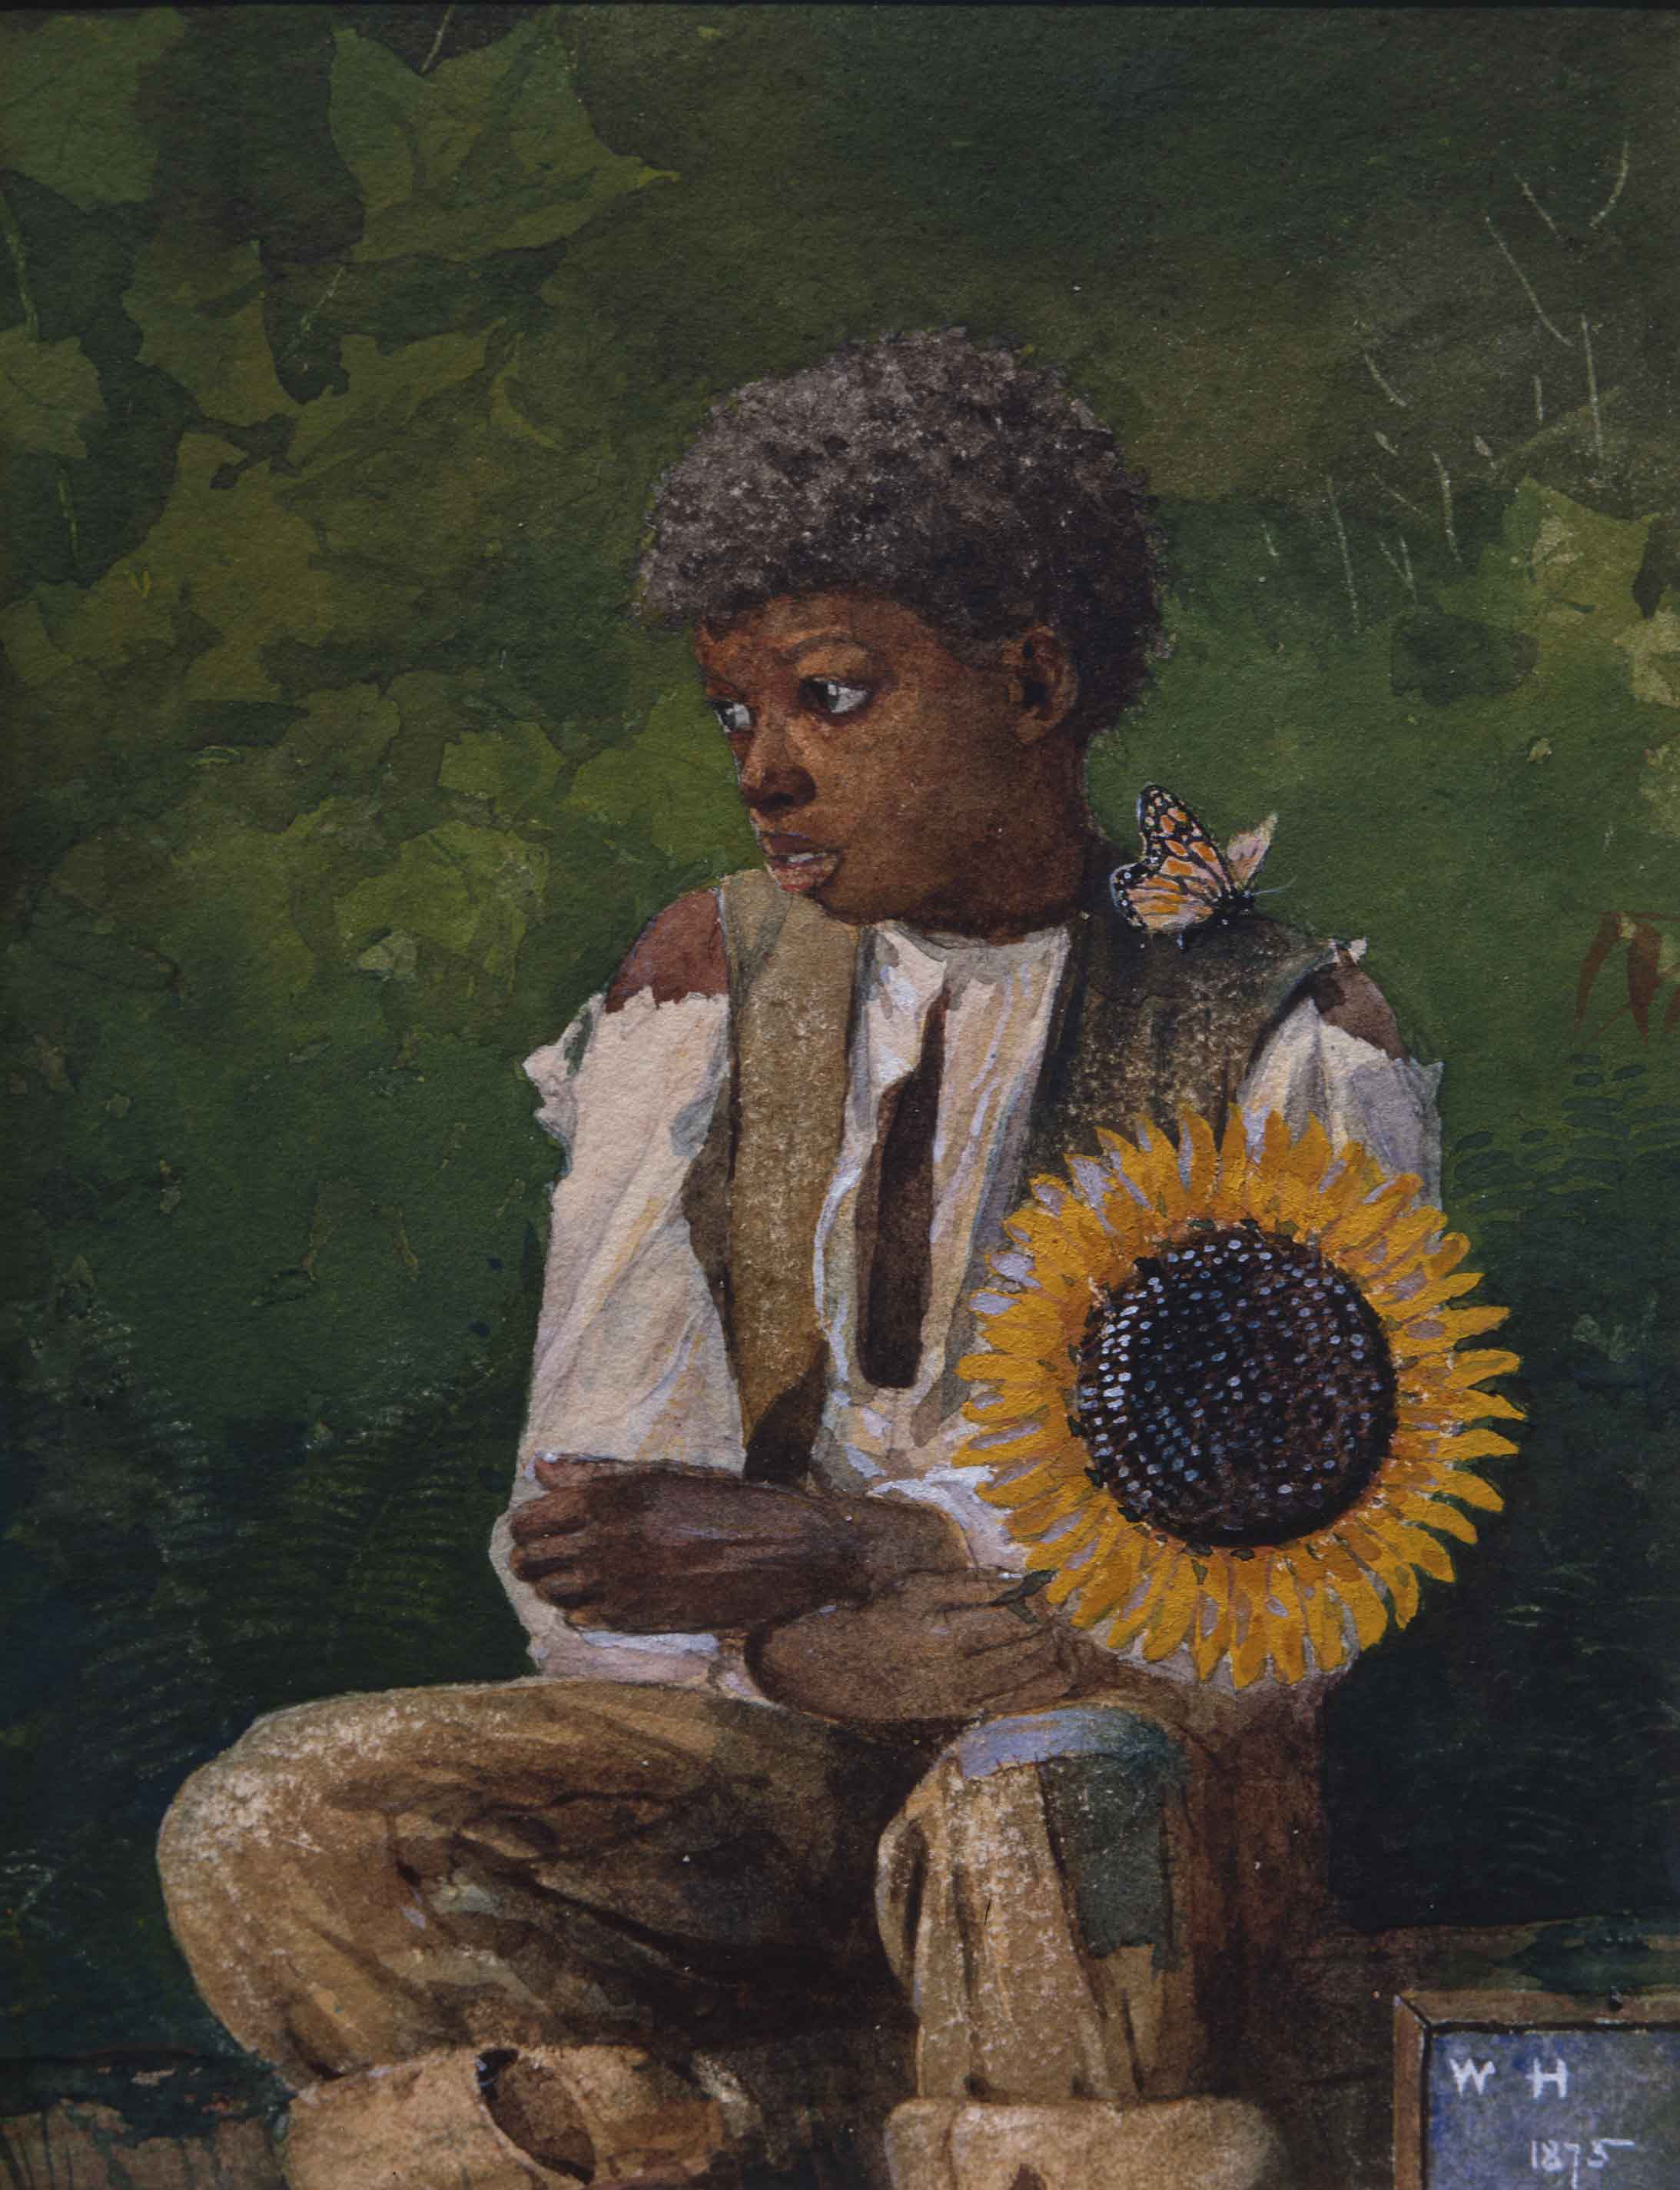 선생님께 드릴 해바라기(Taking Sunflower to Teacher) by Winslow Homer - 1875 - 19.4 × 15.7 cm 